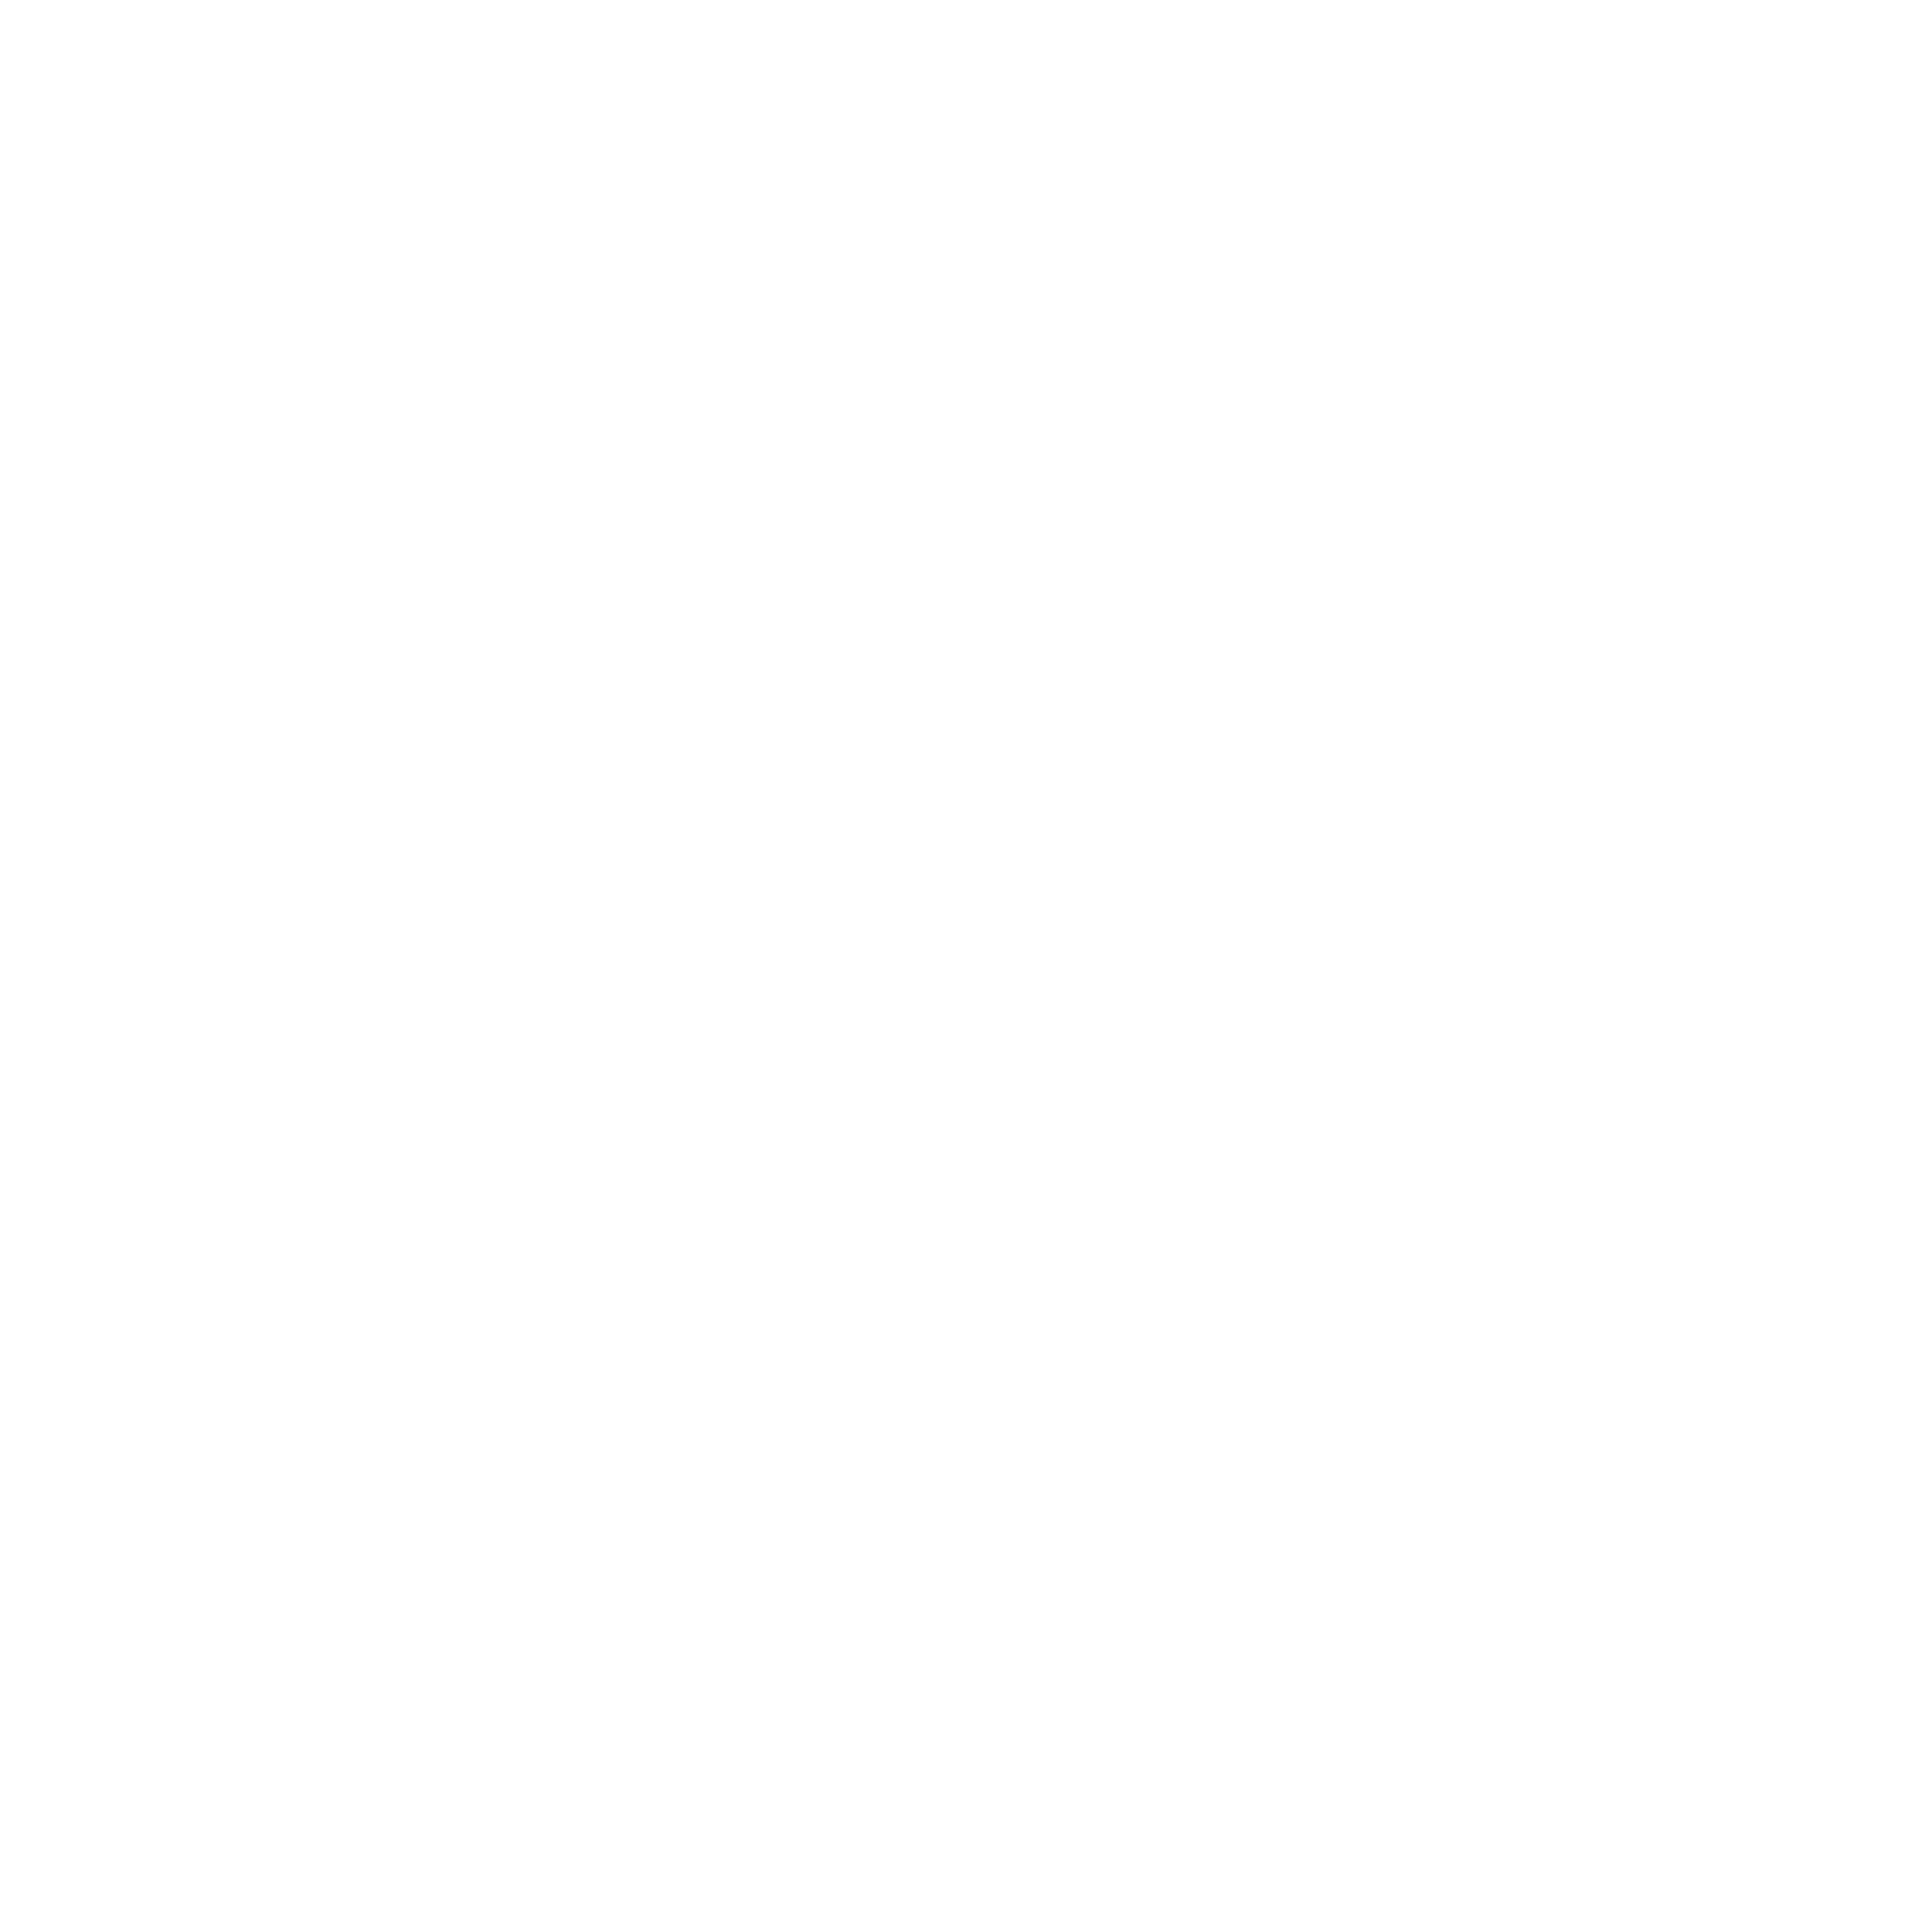 Joburg Logos for Web 2022 Shamansu Sq